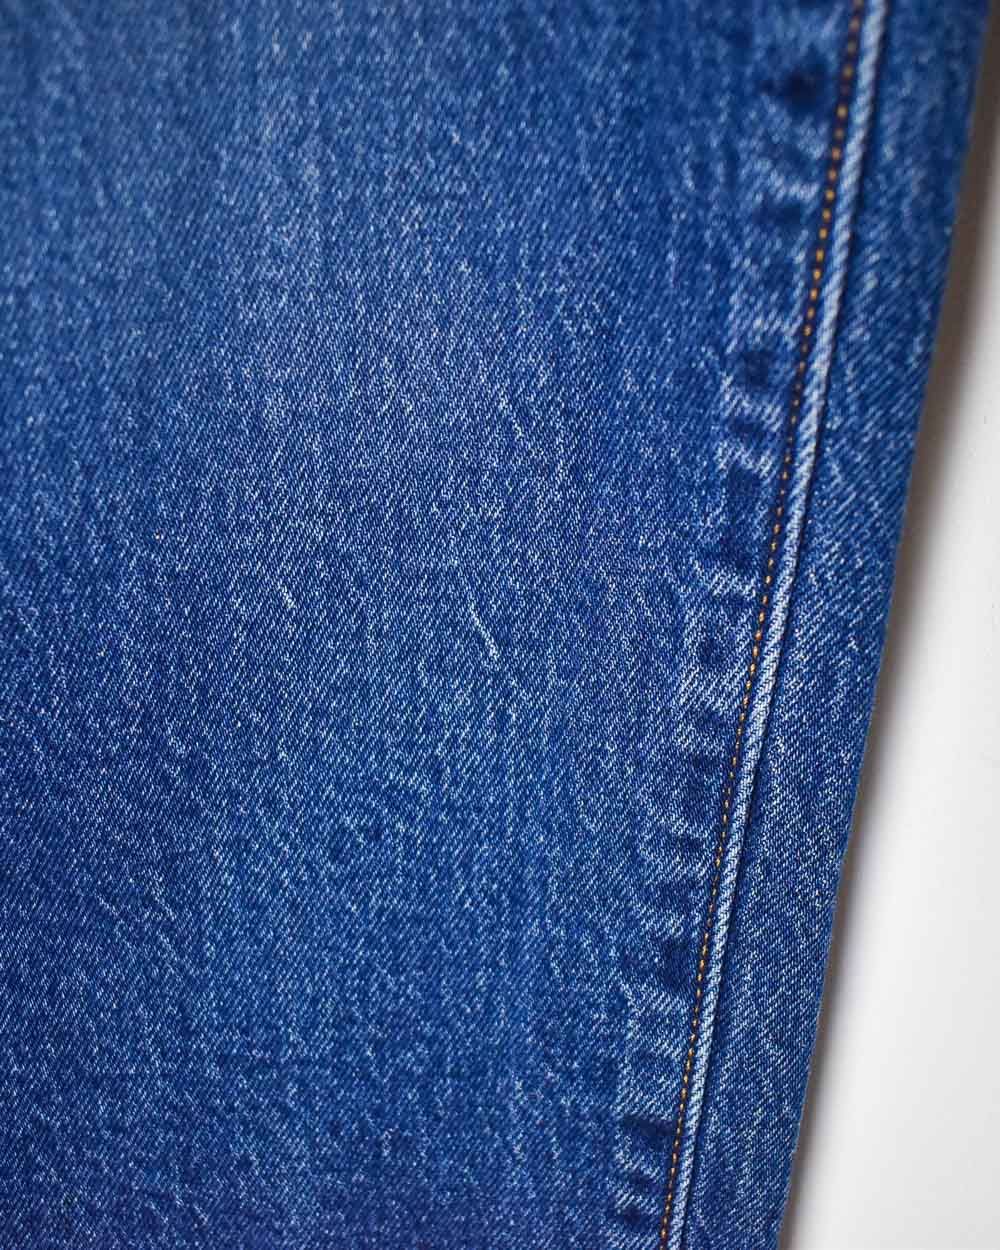 Blue Levi's 501 Jeans - W26 L26